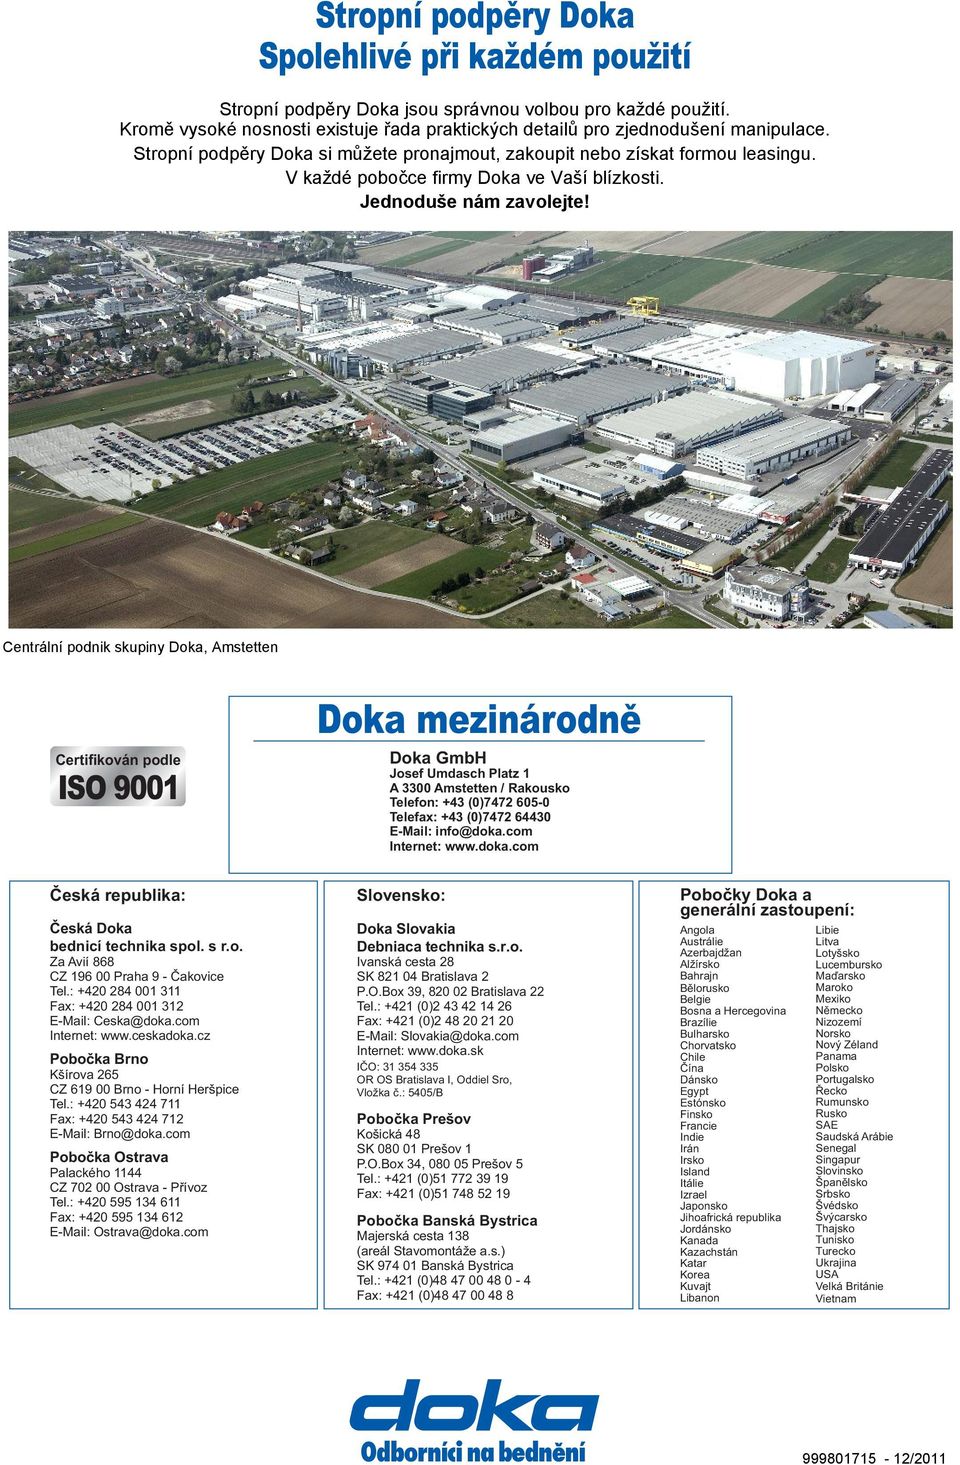 Centrální podnik skupiny Doka, Amstetten Certifikován podle ISO 9001 Doka mezinárodně Doka GmbH Josef Umdasch Platz 1 A 3300 Amstetten / Rakousko Telefon: +43 (0)7472 605-0 Telefax: +43 (0)7472 64430